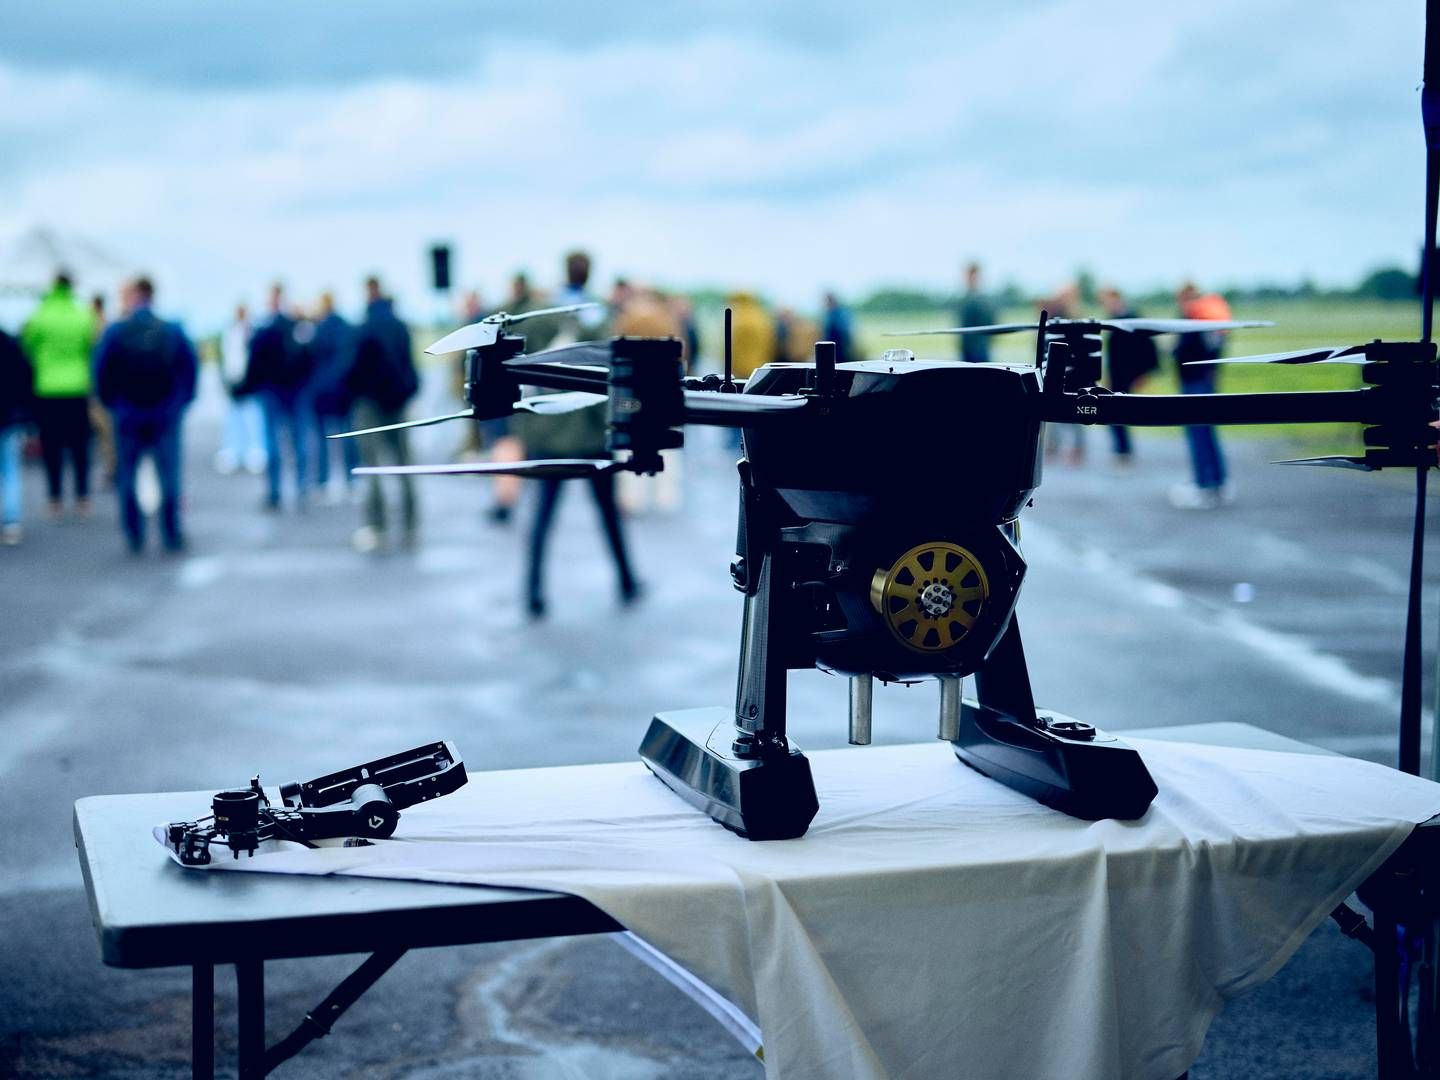 Dedrones kontor i HCA Airport vil ikke være permanent bemandet, men vil blive benyttet af Dedrones medarbejdere i forbindelse med eksempelvis test- og udviklingsopgaver i det nationale dronetestcenter UAS Denmark Test Center, som er beliggende i lufthavnen. | Foto: Pr Billeder